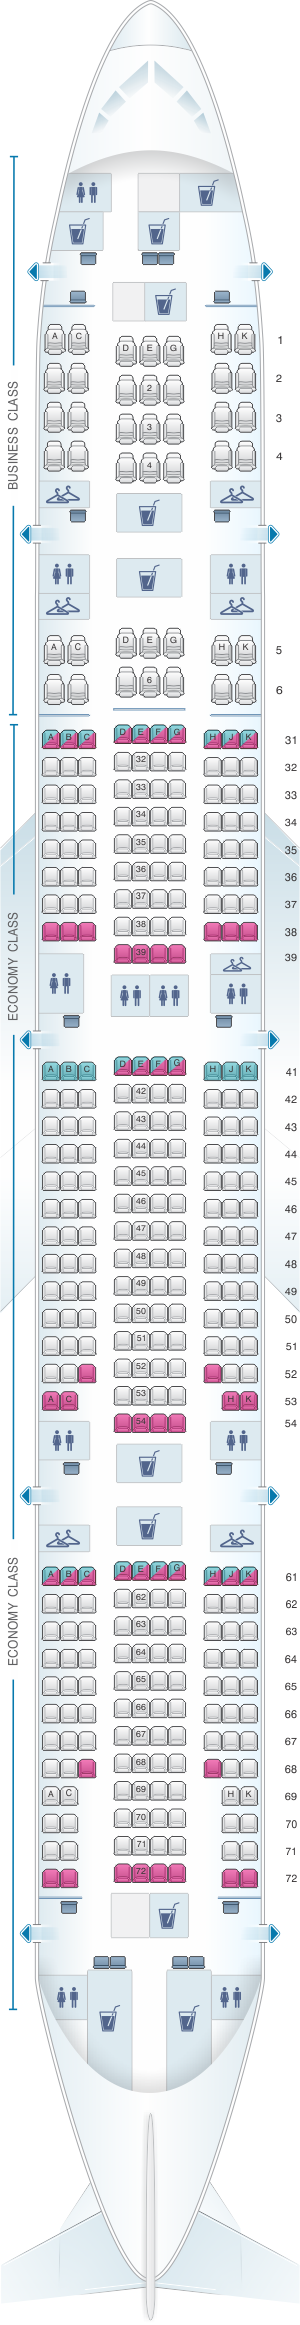 Delta Flight 115 Seating Chart